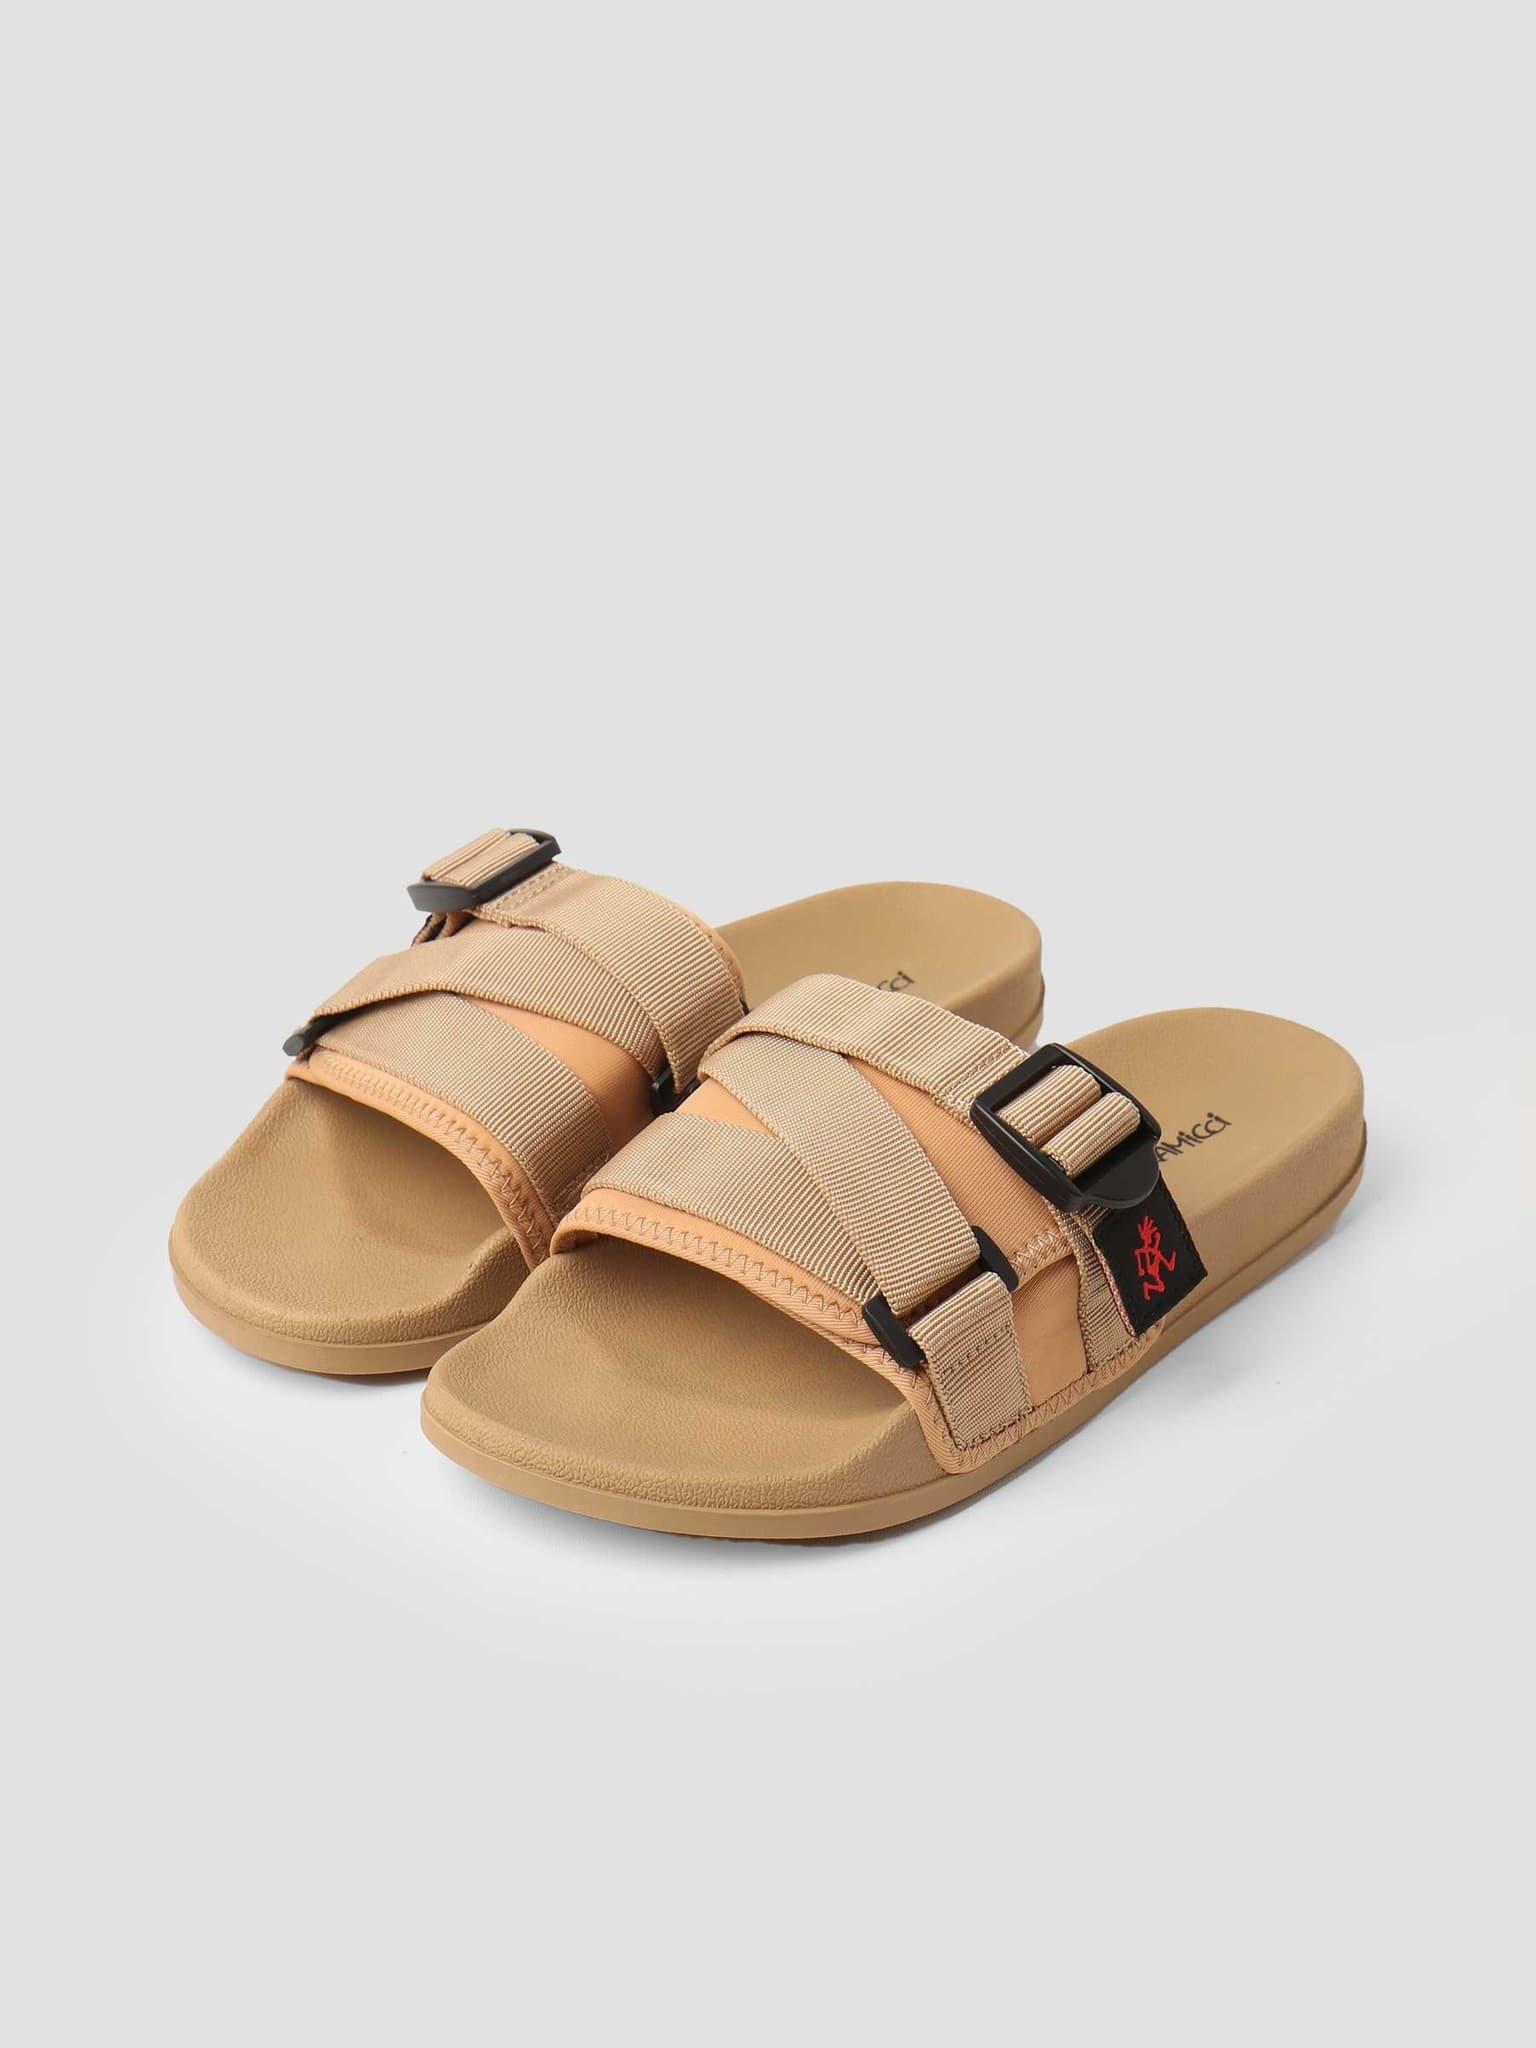 Slide Sandals Beige GRF-004